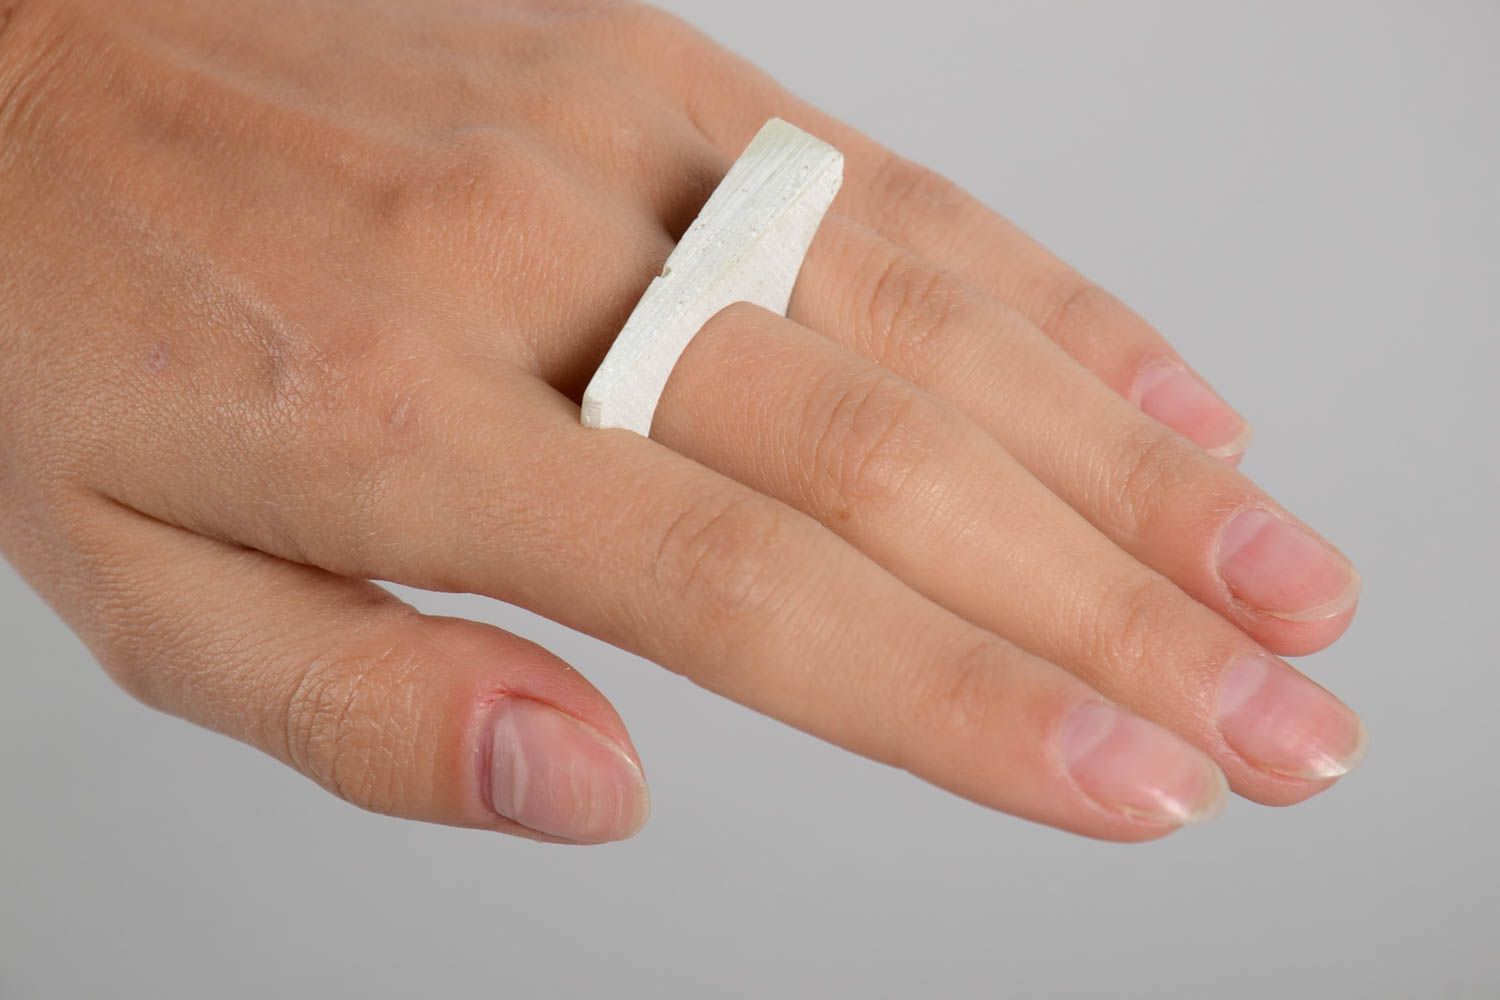 Кольцо ручной работы интересное необычное кольцо белое красивое модное кольцо фото 2